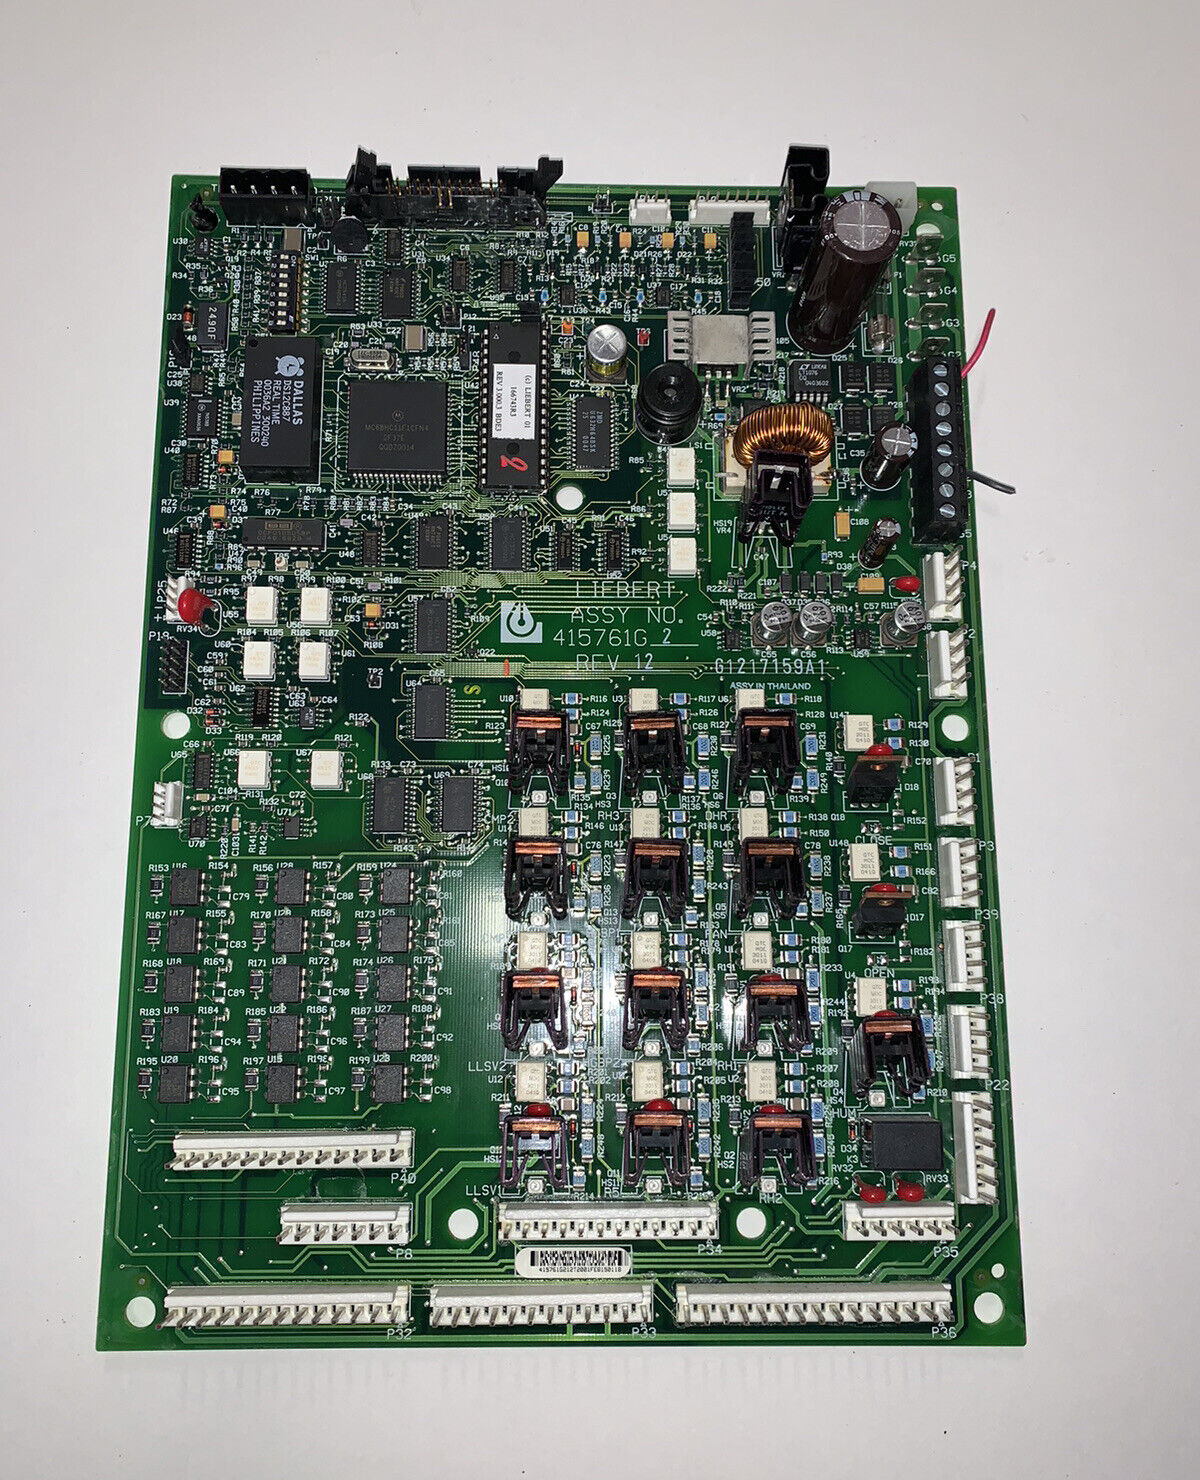 Liebert Assy No. 415761G-2 Rev 12 Circuit Board Tested 